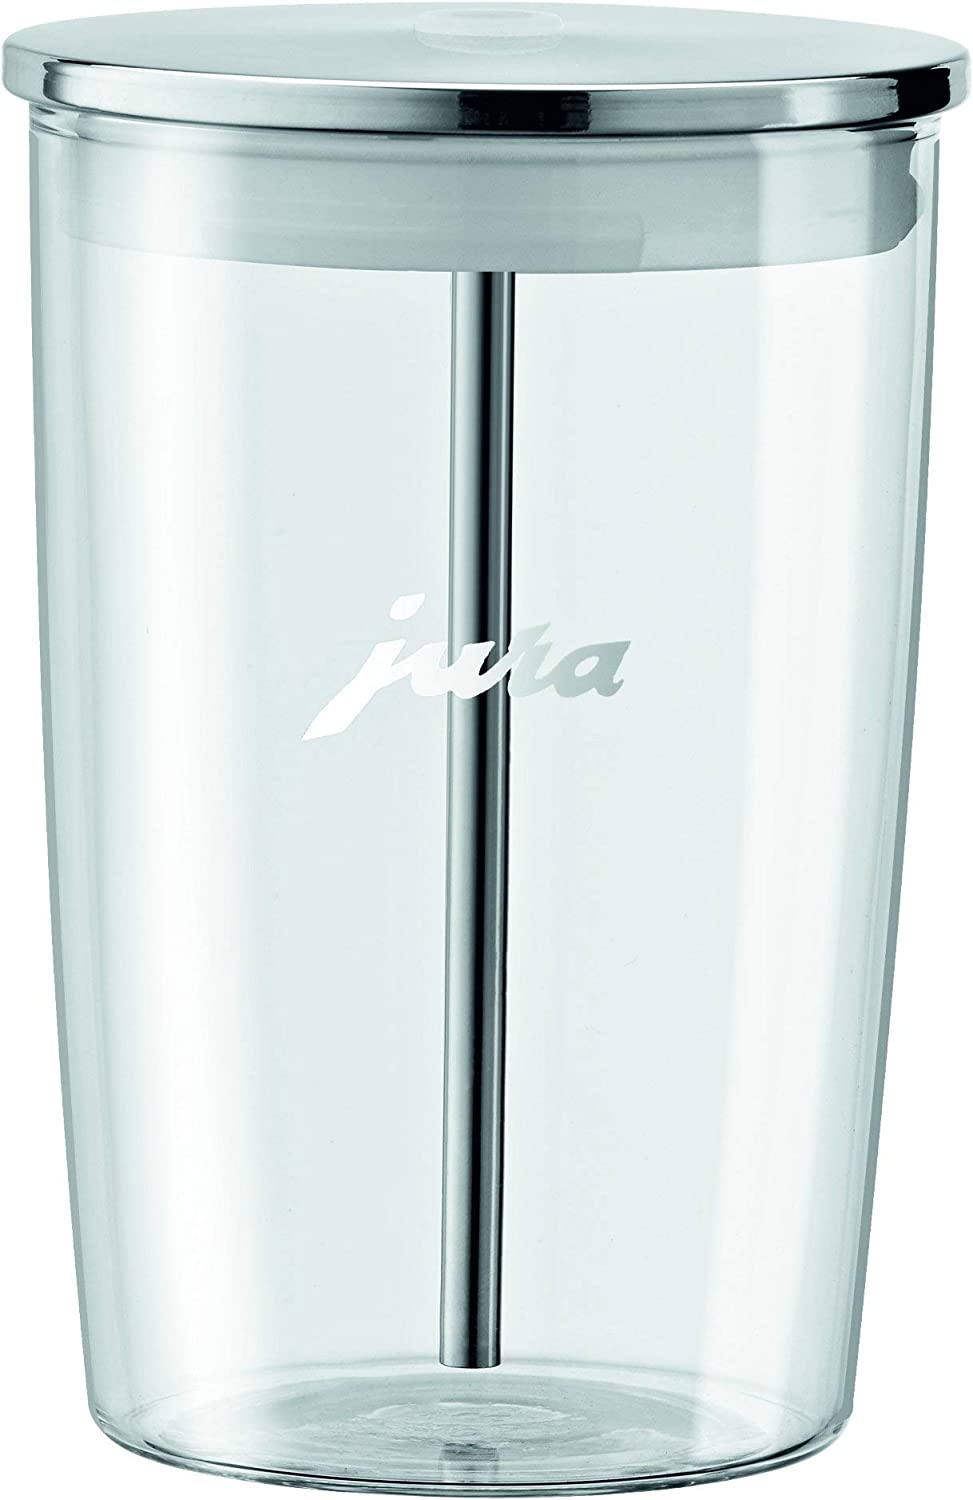 Unbekannt Jura 72570 Glass Milk Container, 0.5 L, with Milk Hose